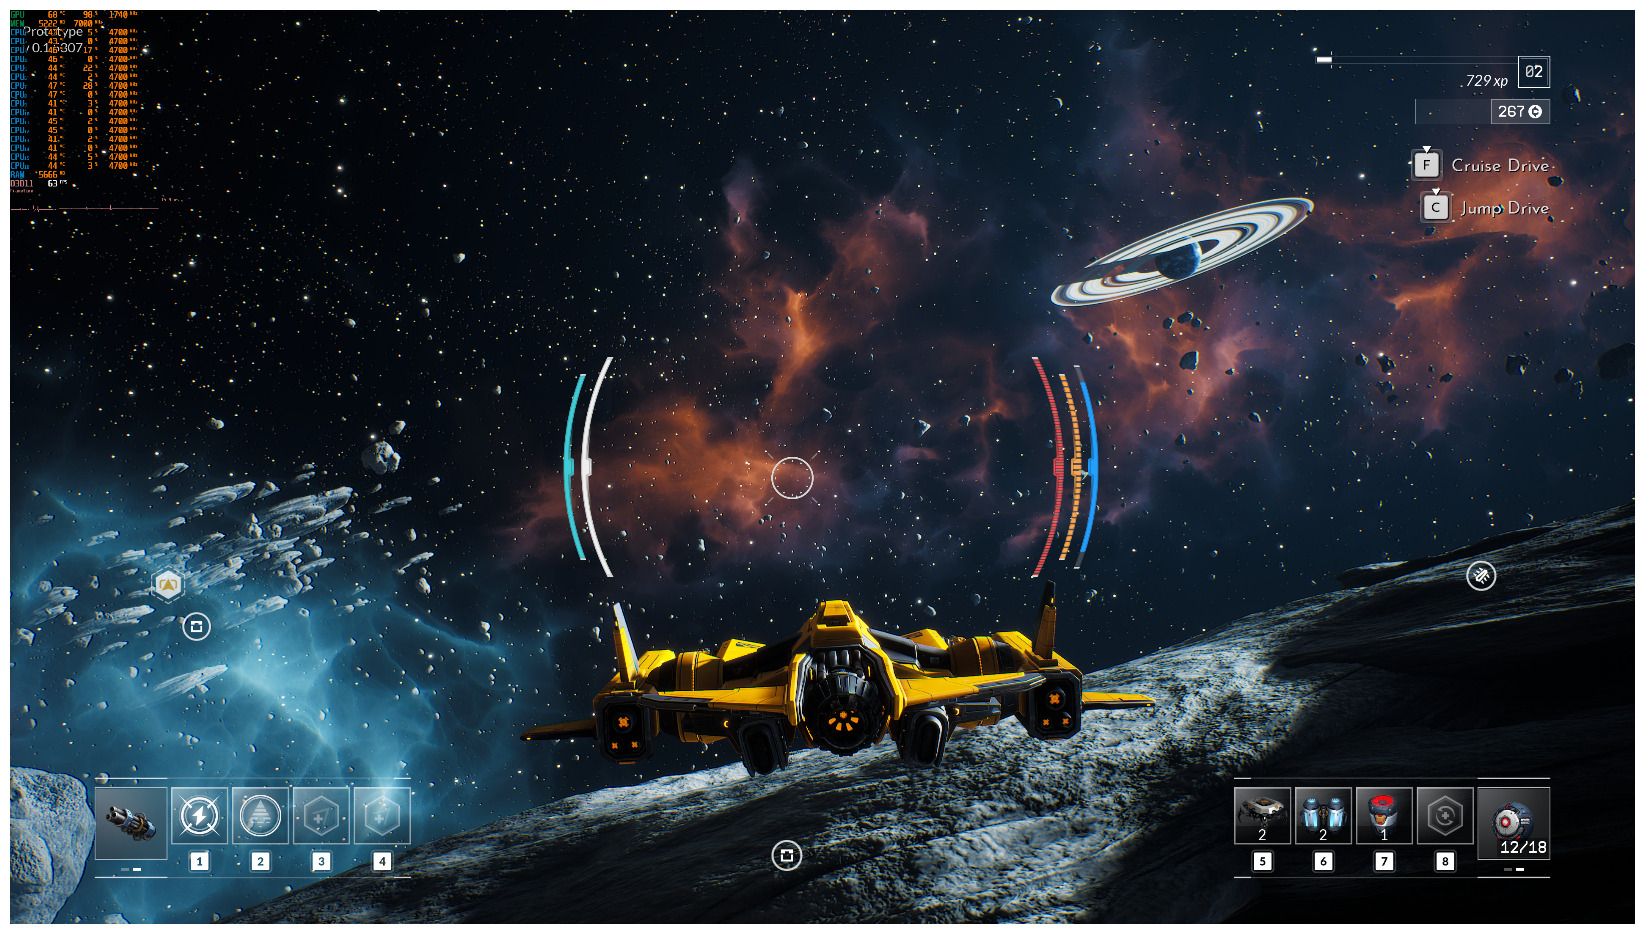 Image 15 : Everspace 2 exhibe des captures en jeu en 4K, et elles sont magnifiques